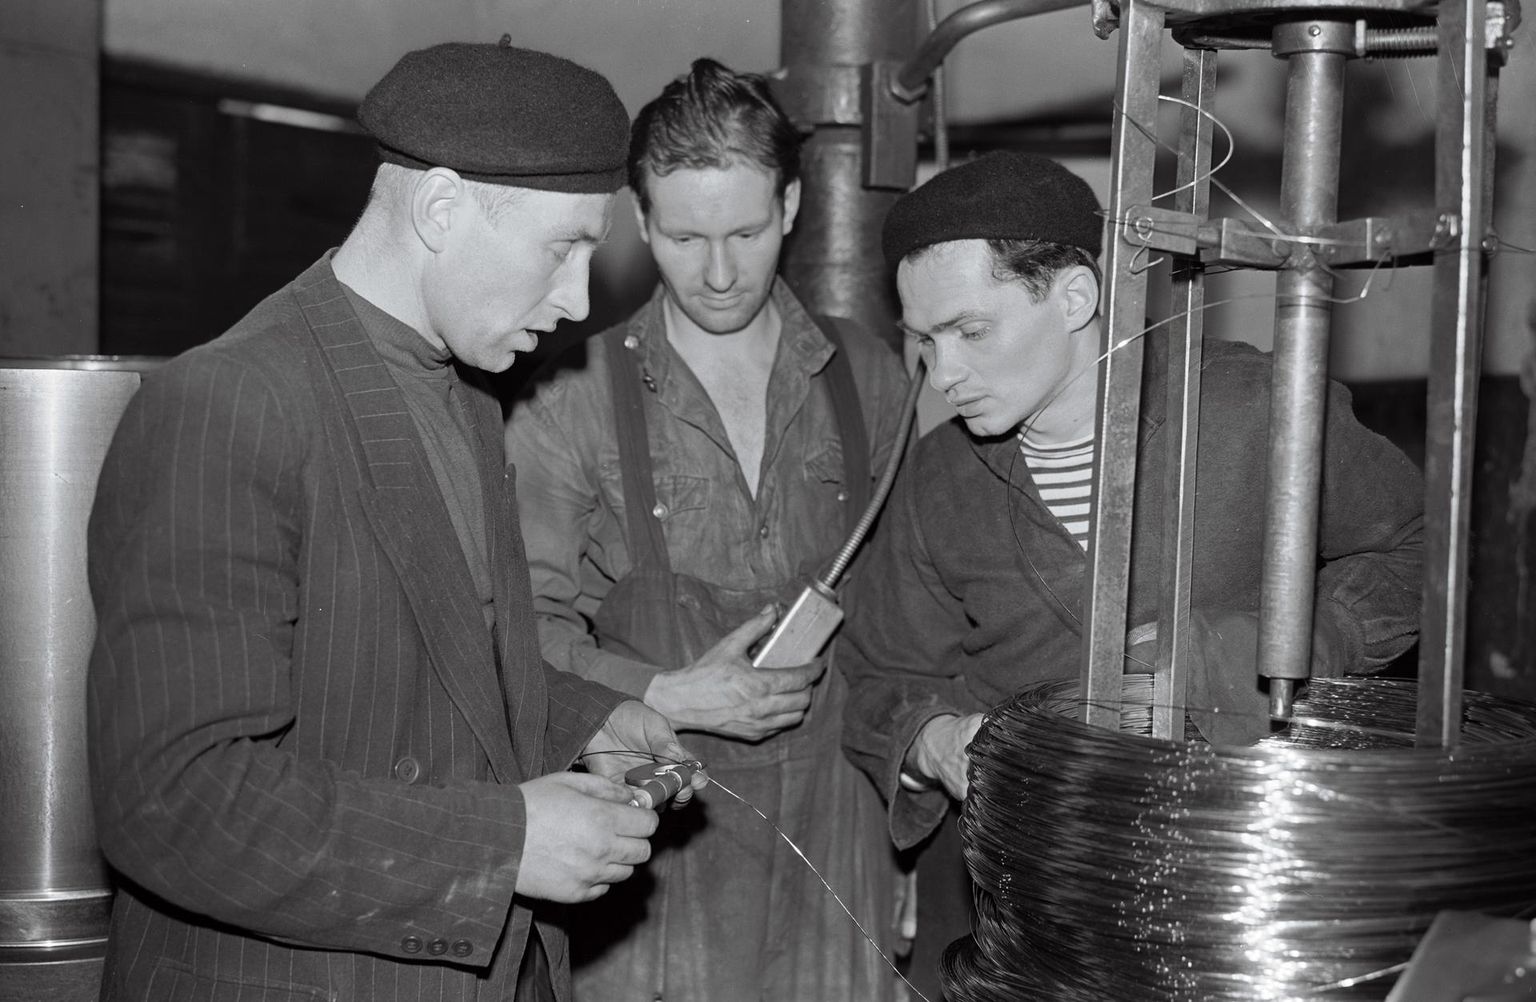 Tehase Eesti Kaabel eesrindlik traaditõmbaja Harri Prii (keskel) juhendab 1959. aastal Leedu praktikante Antanas Mikeliunast (vasakul) ja Romualdas Labanauskast.